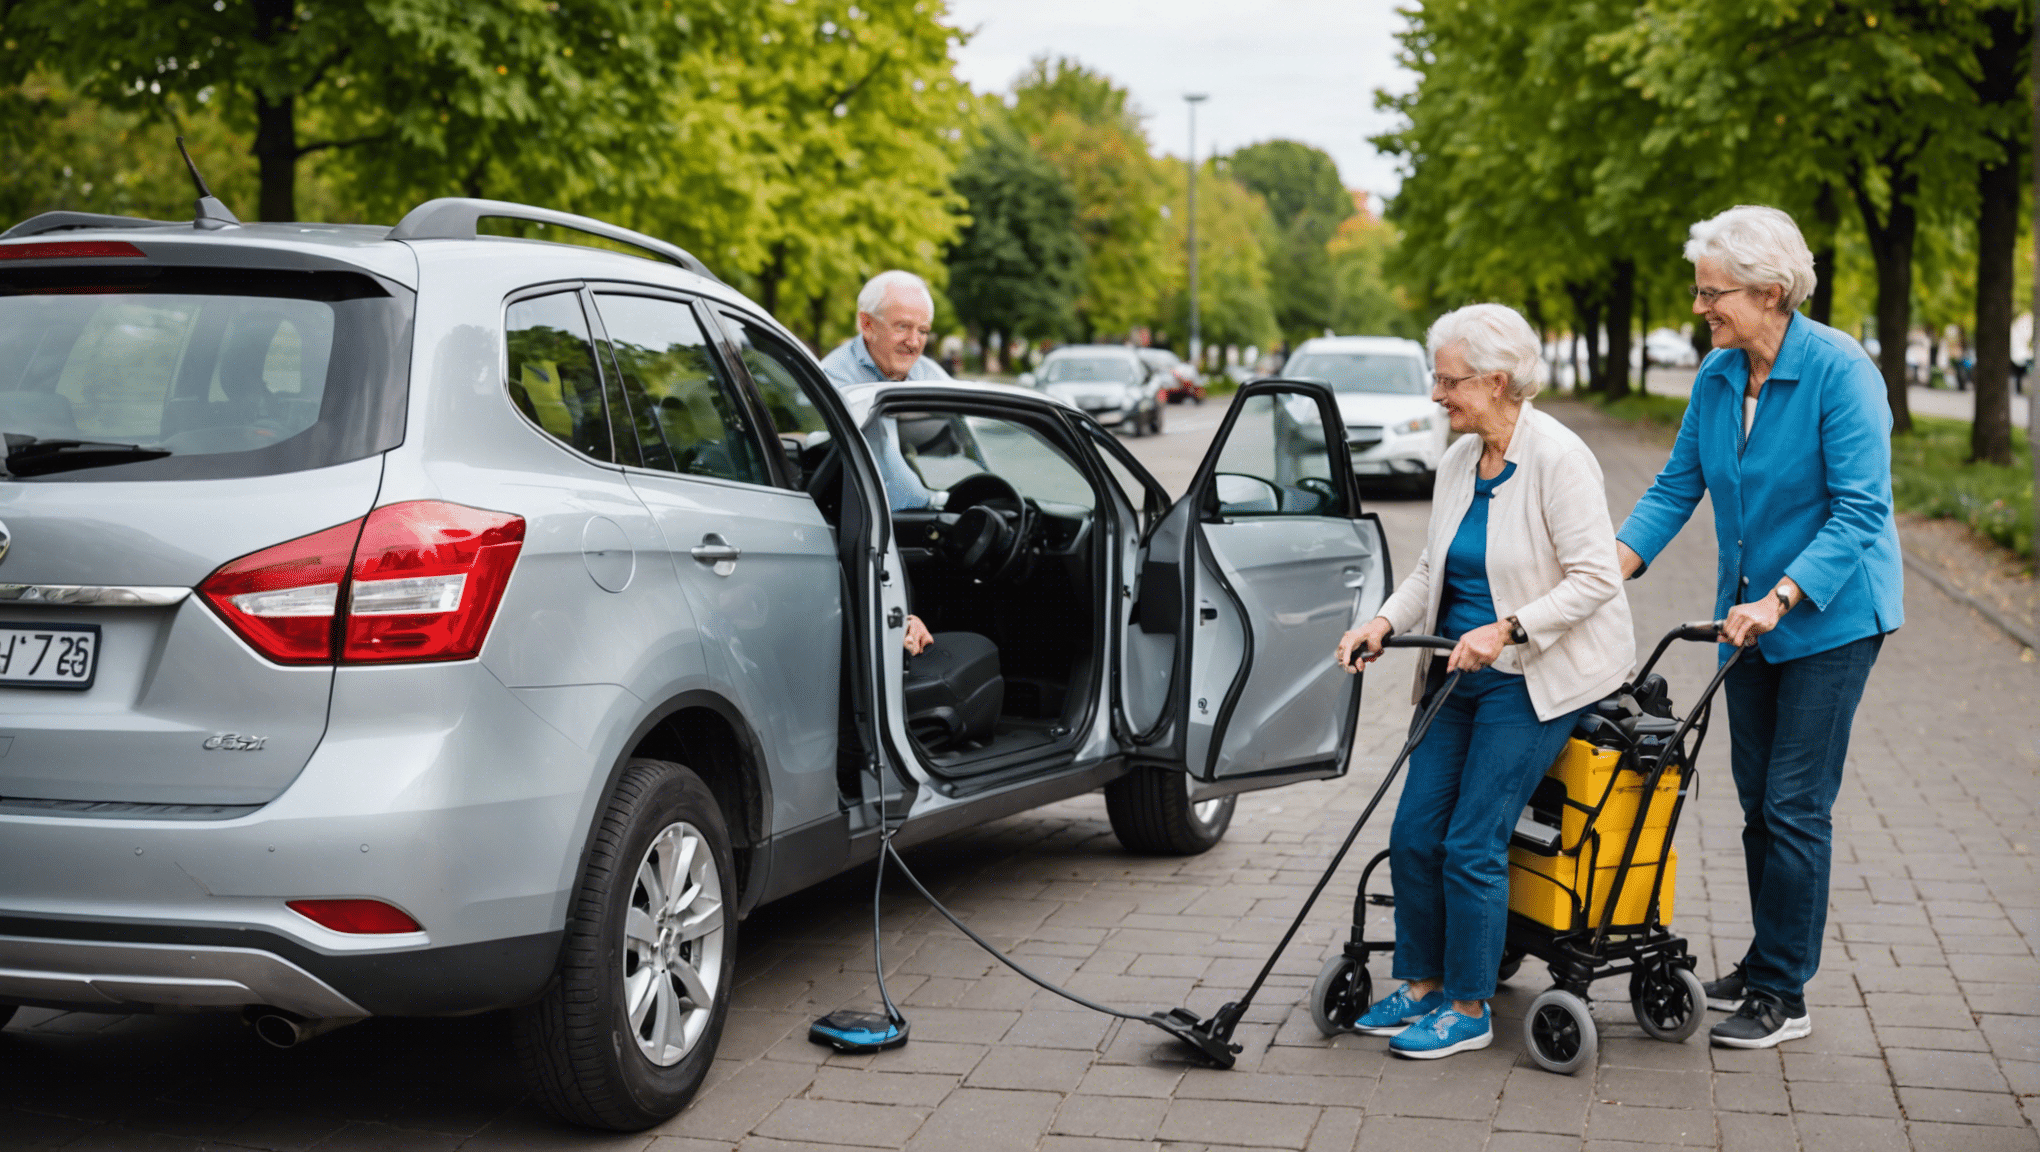 découvrez comment adapter les véhicules aux besoins spécifiques des seniors pour une conduite plus sûre et confortable.